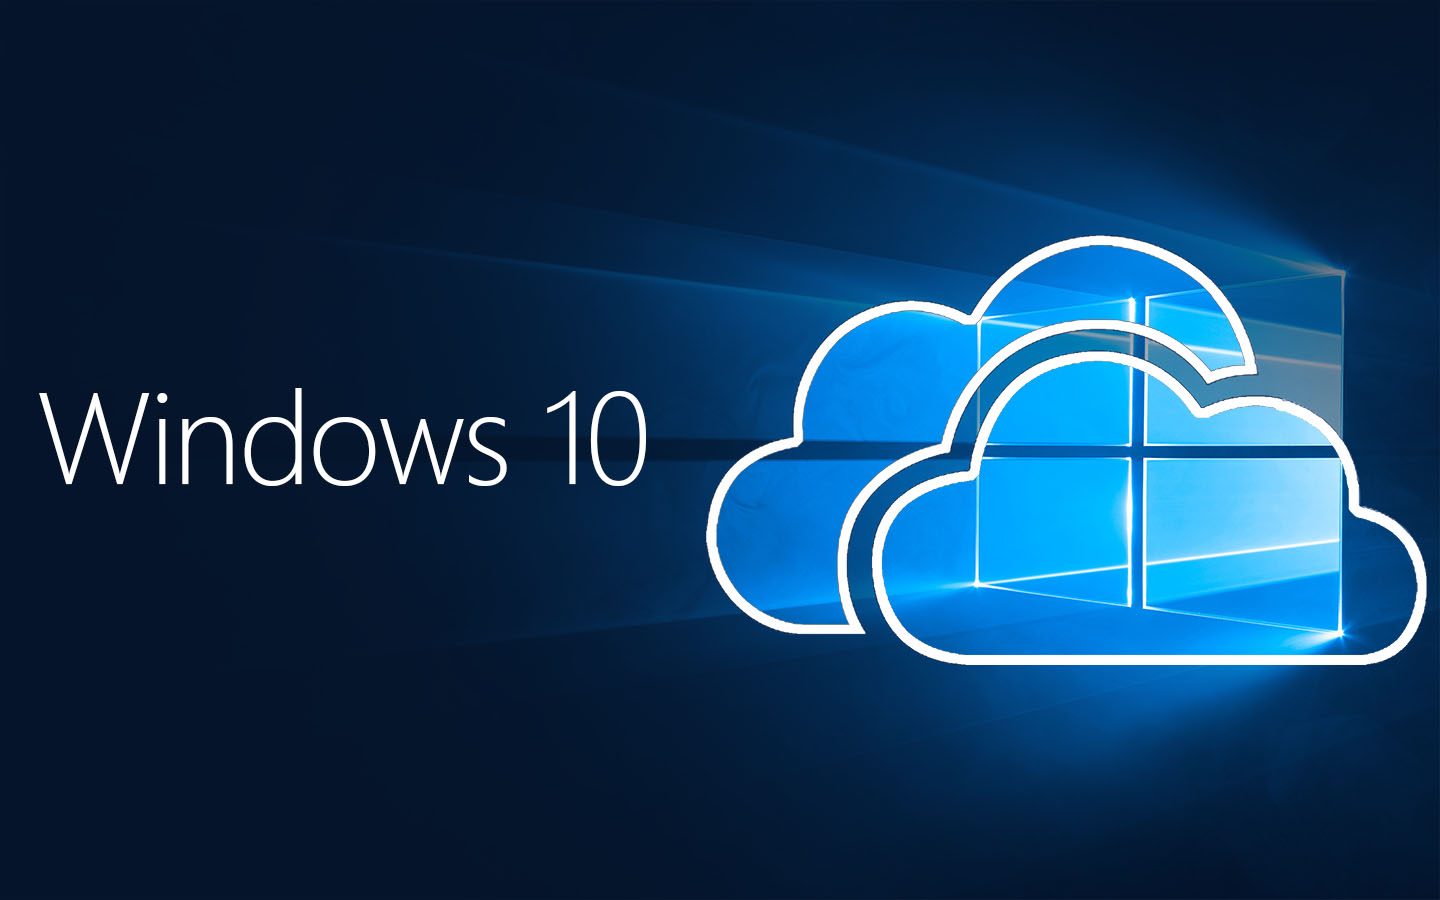 Windows 10 Cloud WindowsArea.de